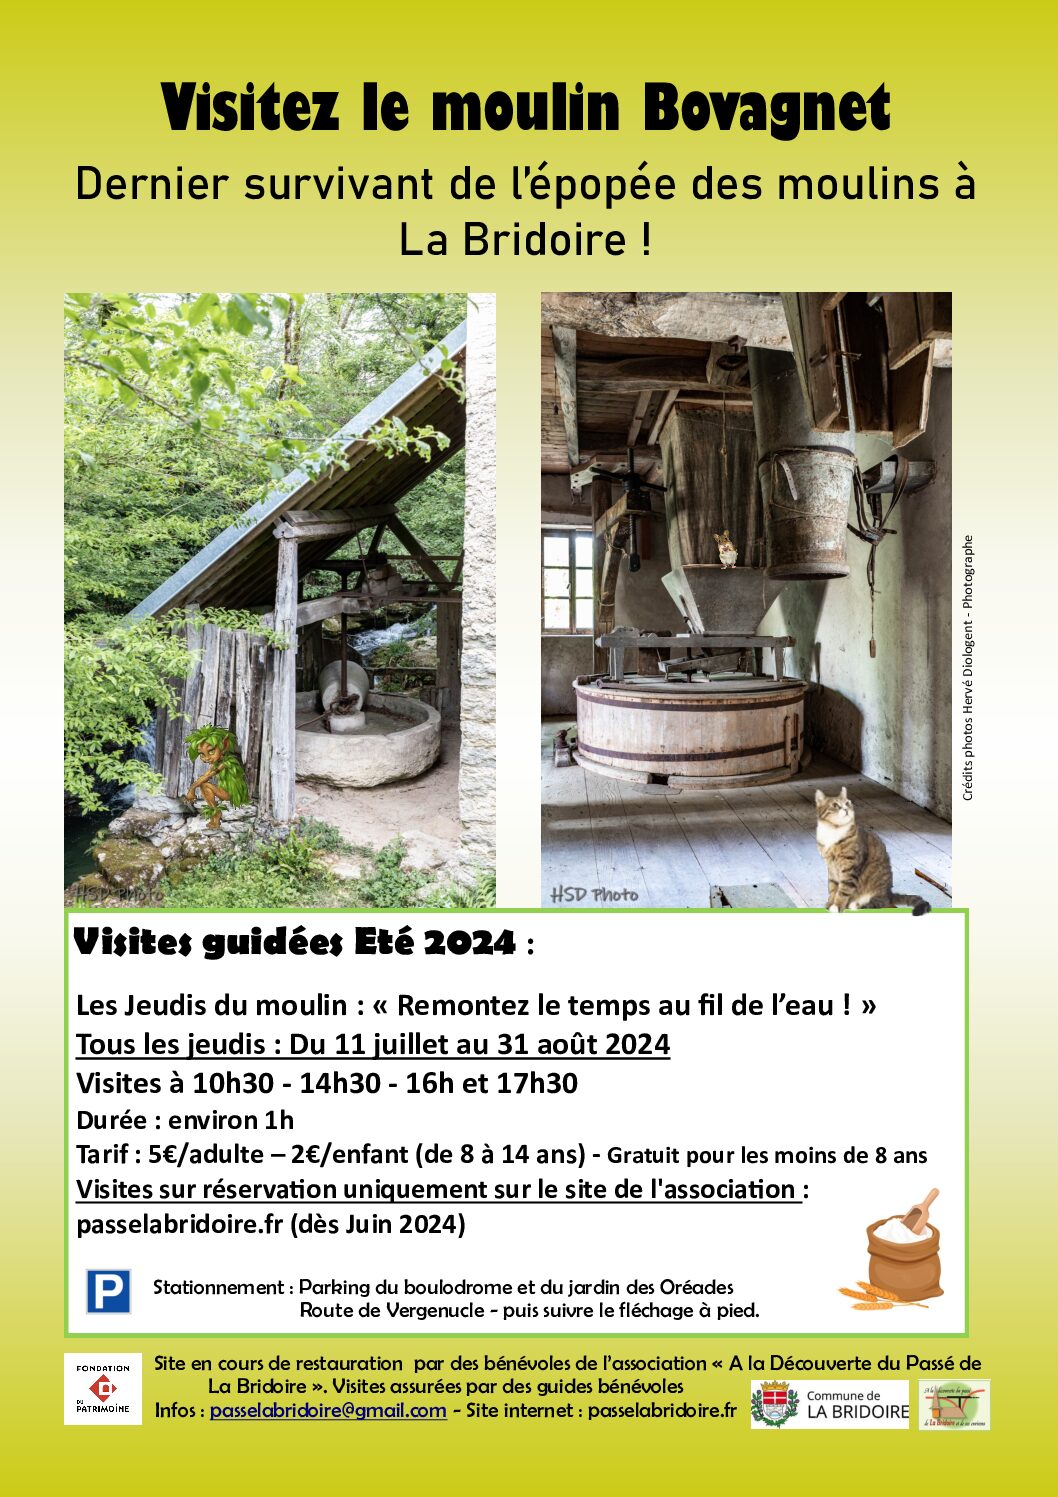 Visites guidées du moulin Bovagnet – Eté 2024